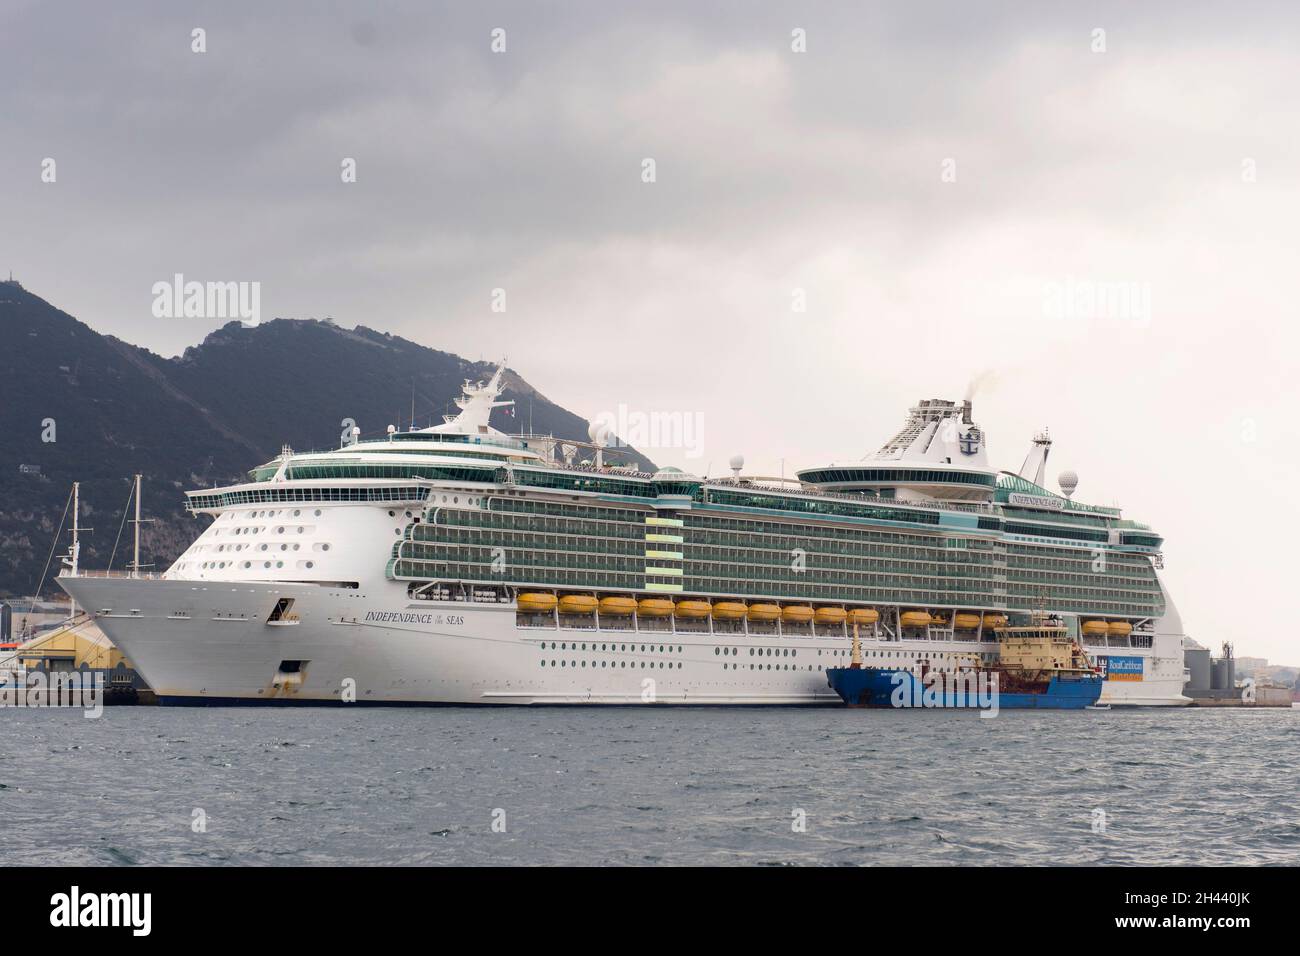 Eine allgemeine Sicht auf das Independence of the Seas-Schiff in Gibraltar. Stockfoto